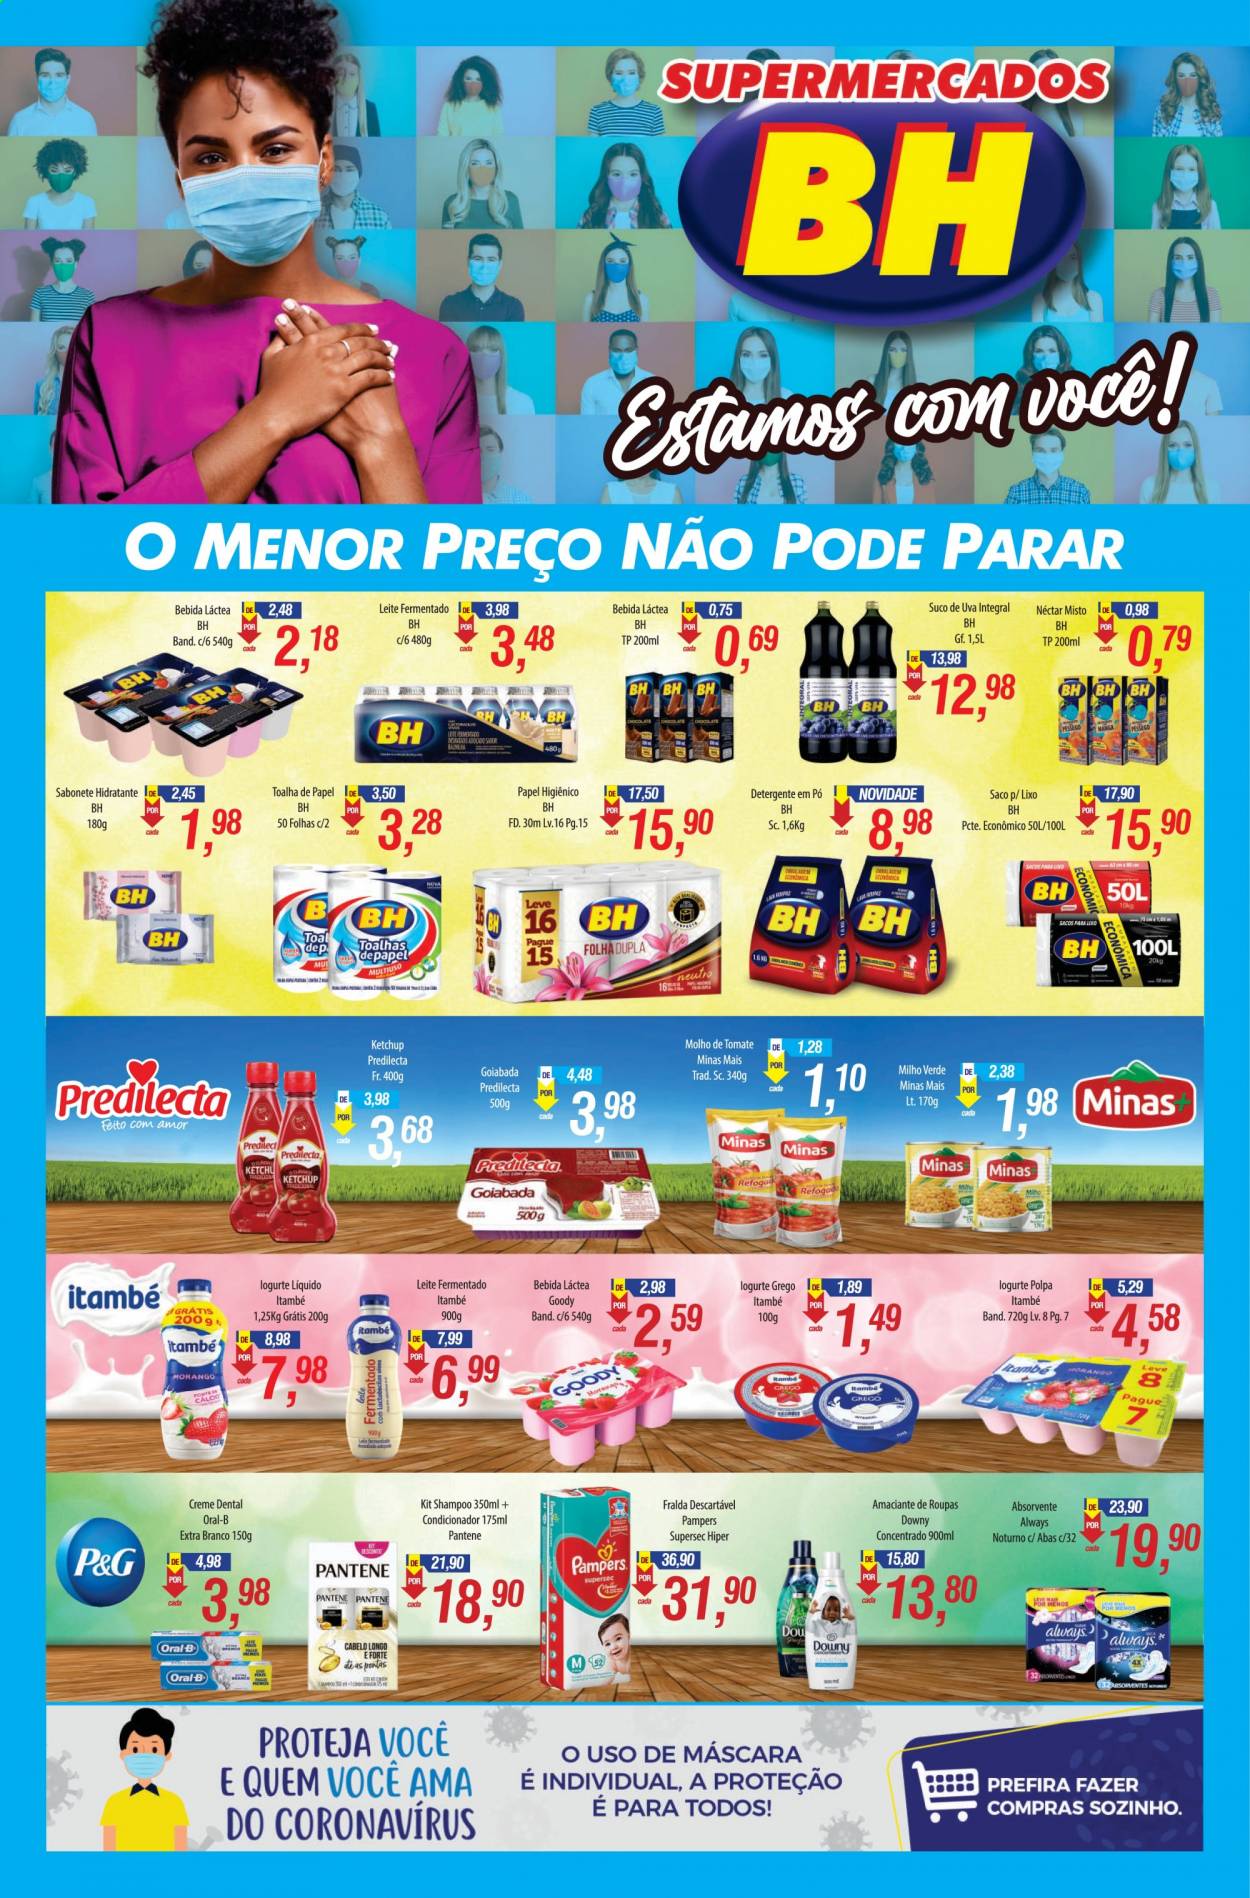 Encarte Supermercados BH  - 05.04.2021 - 18.04.2021.